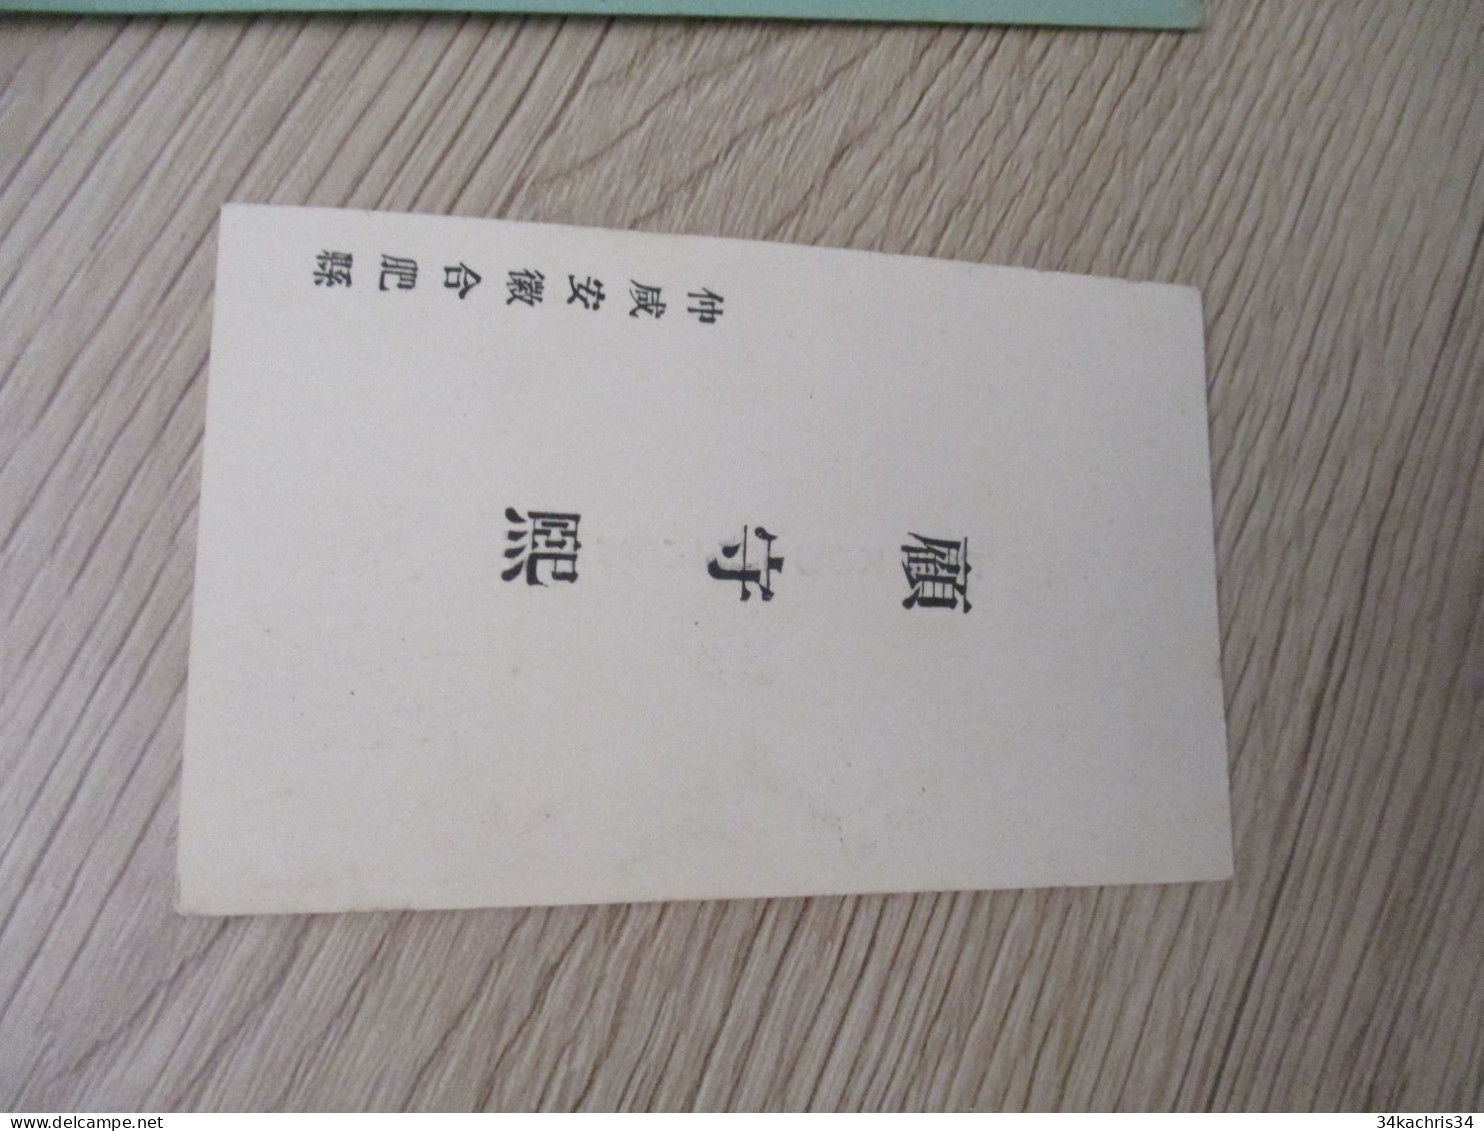 CHINE CHINA  Carte De Visite PH.KOU CHEOU HI Autographe Original   Paypal Ok Out Of UE - Visitekaartjes